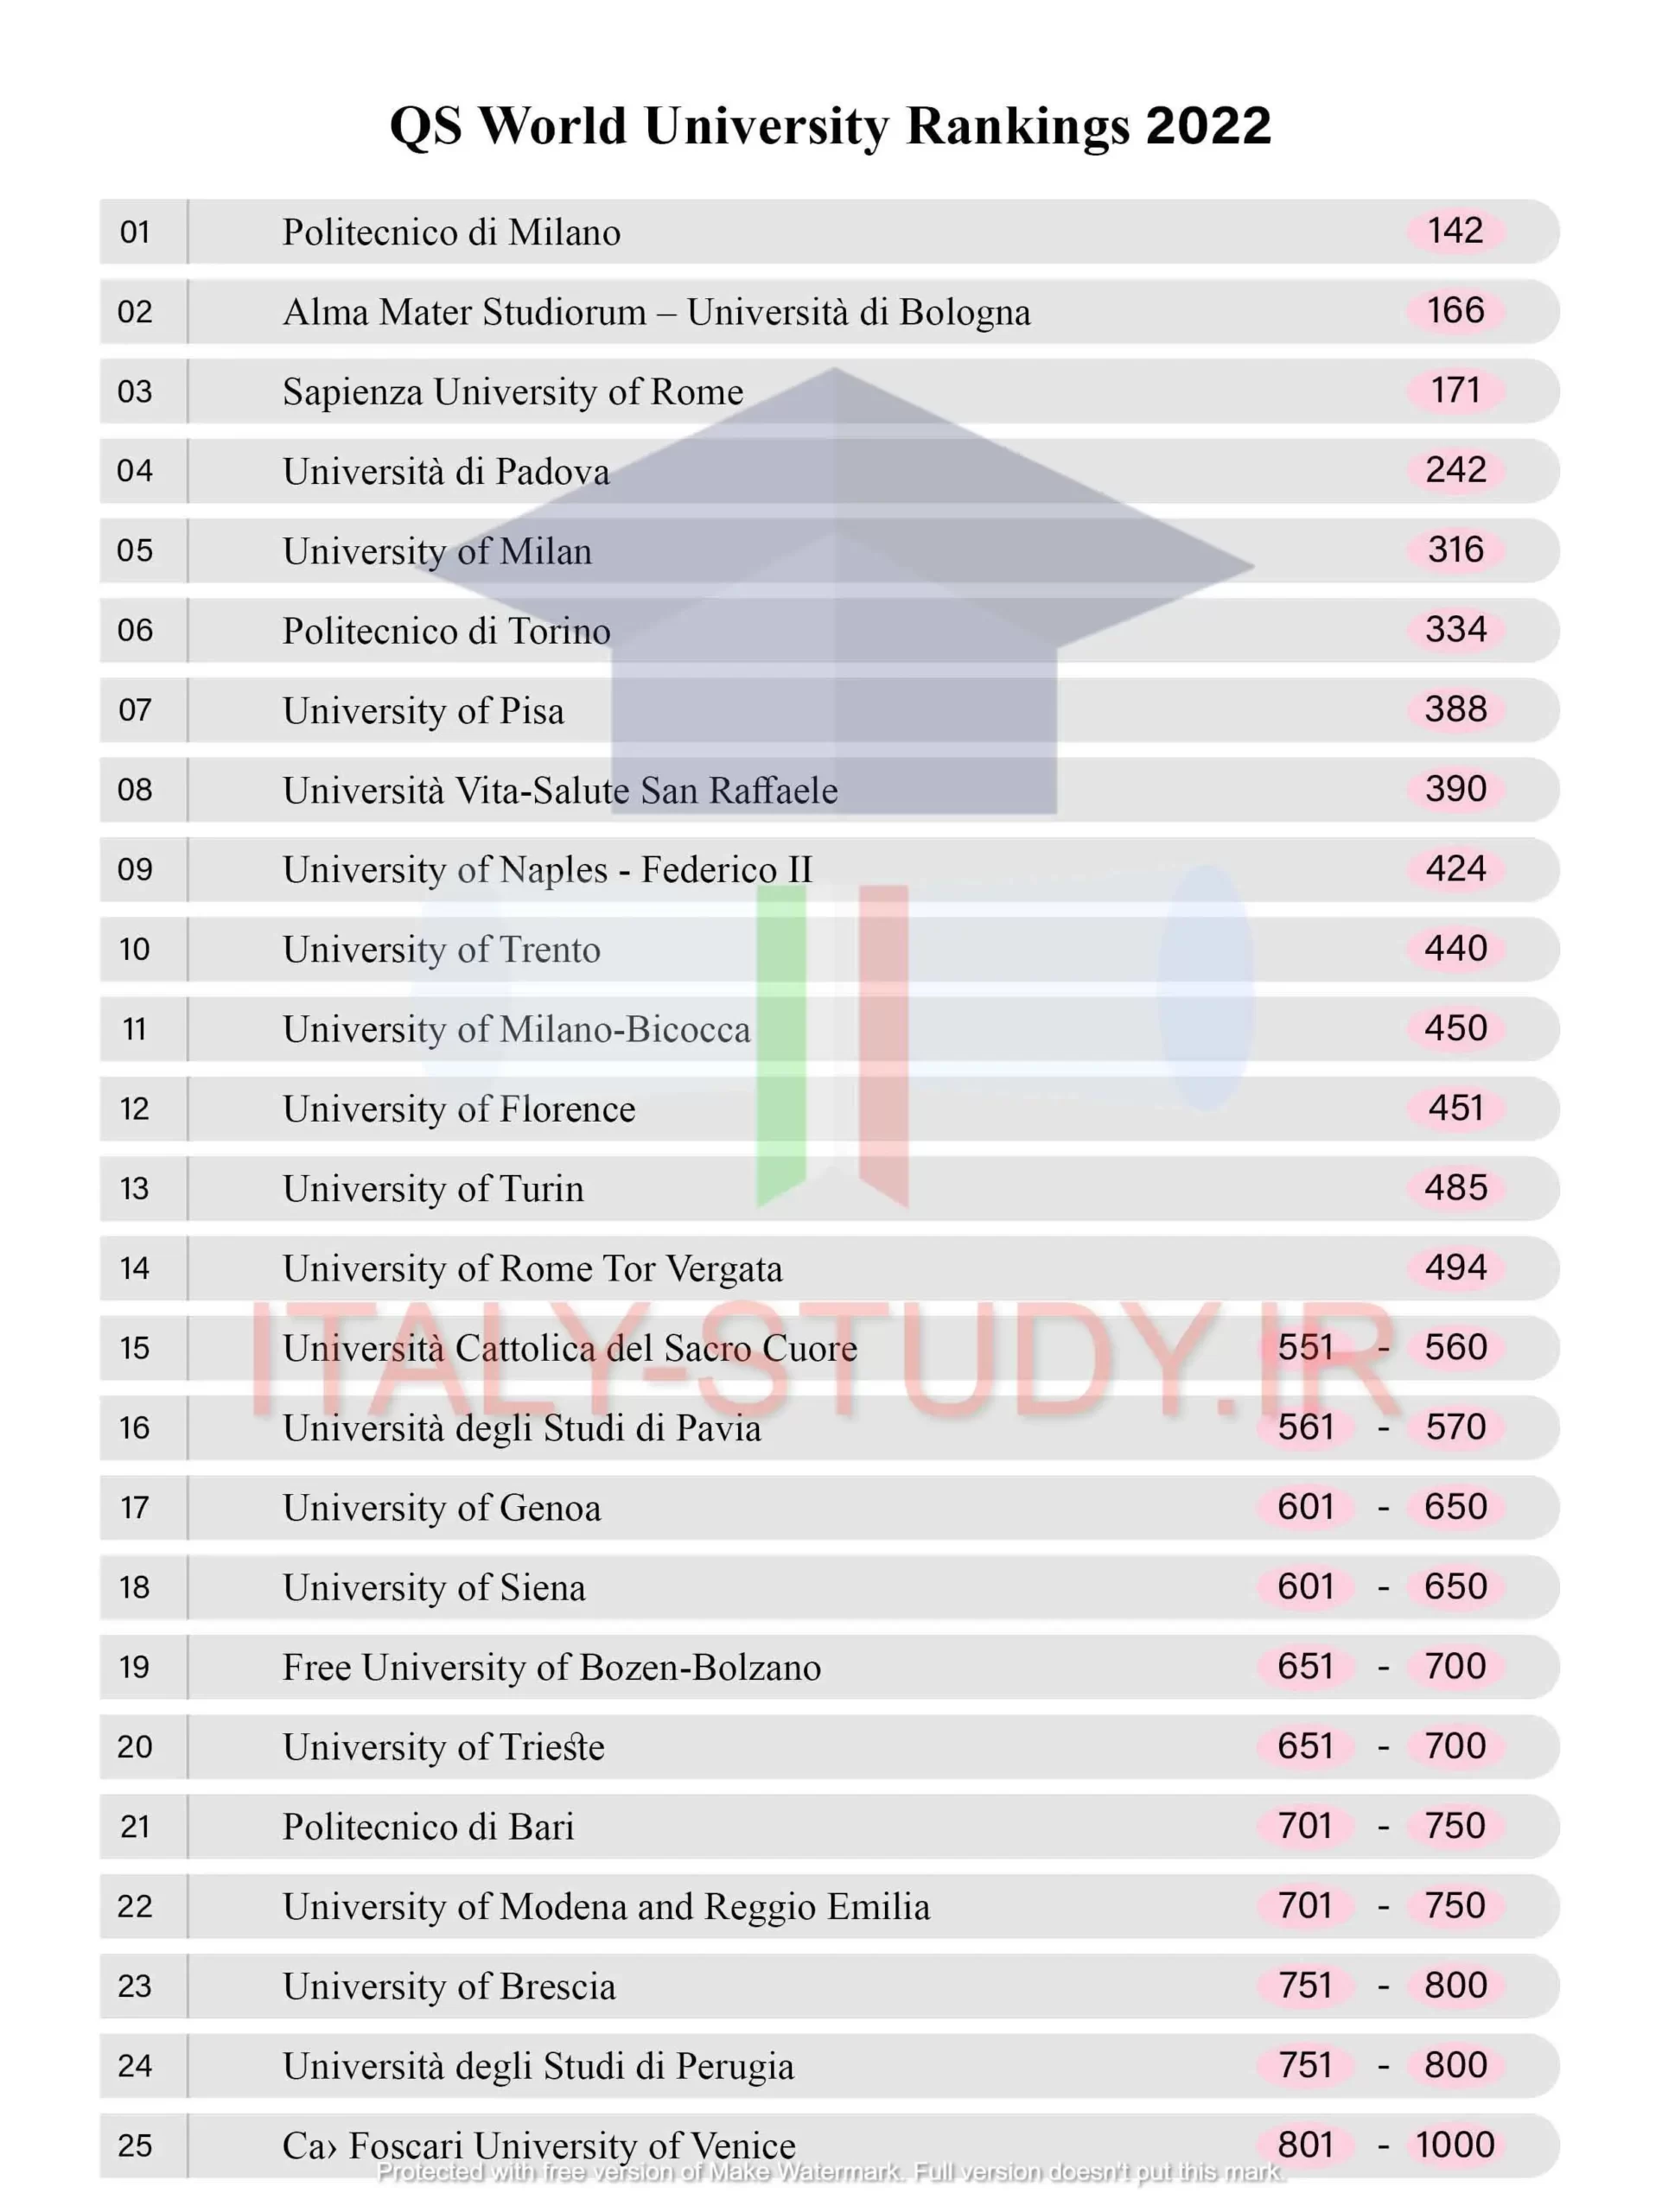 لیست دانشگاه های دولتی ایتالیا